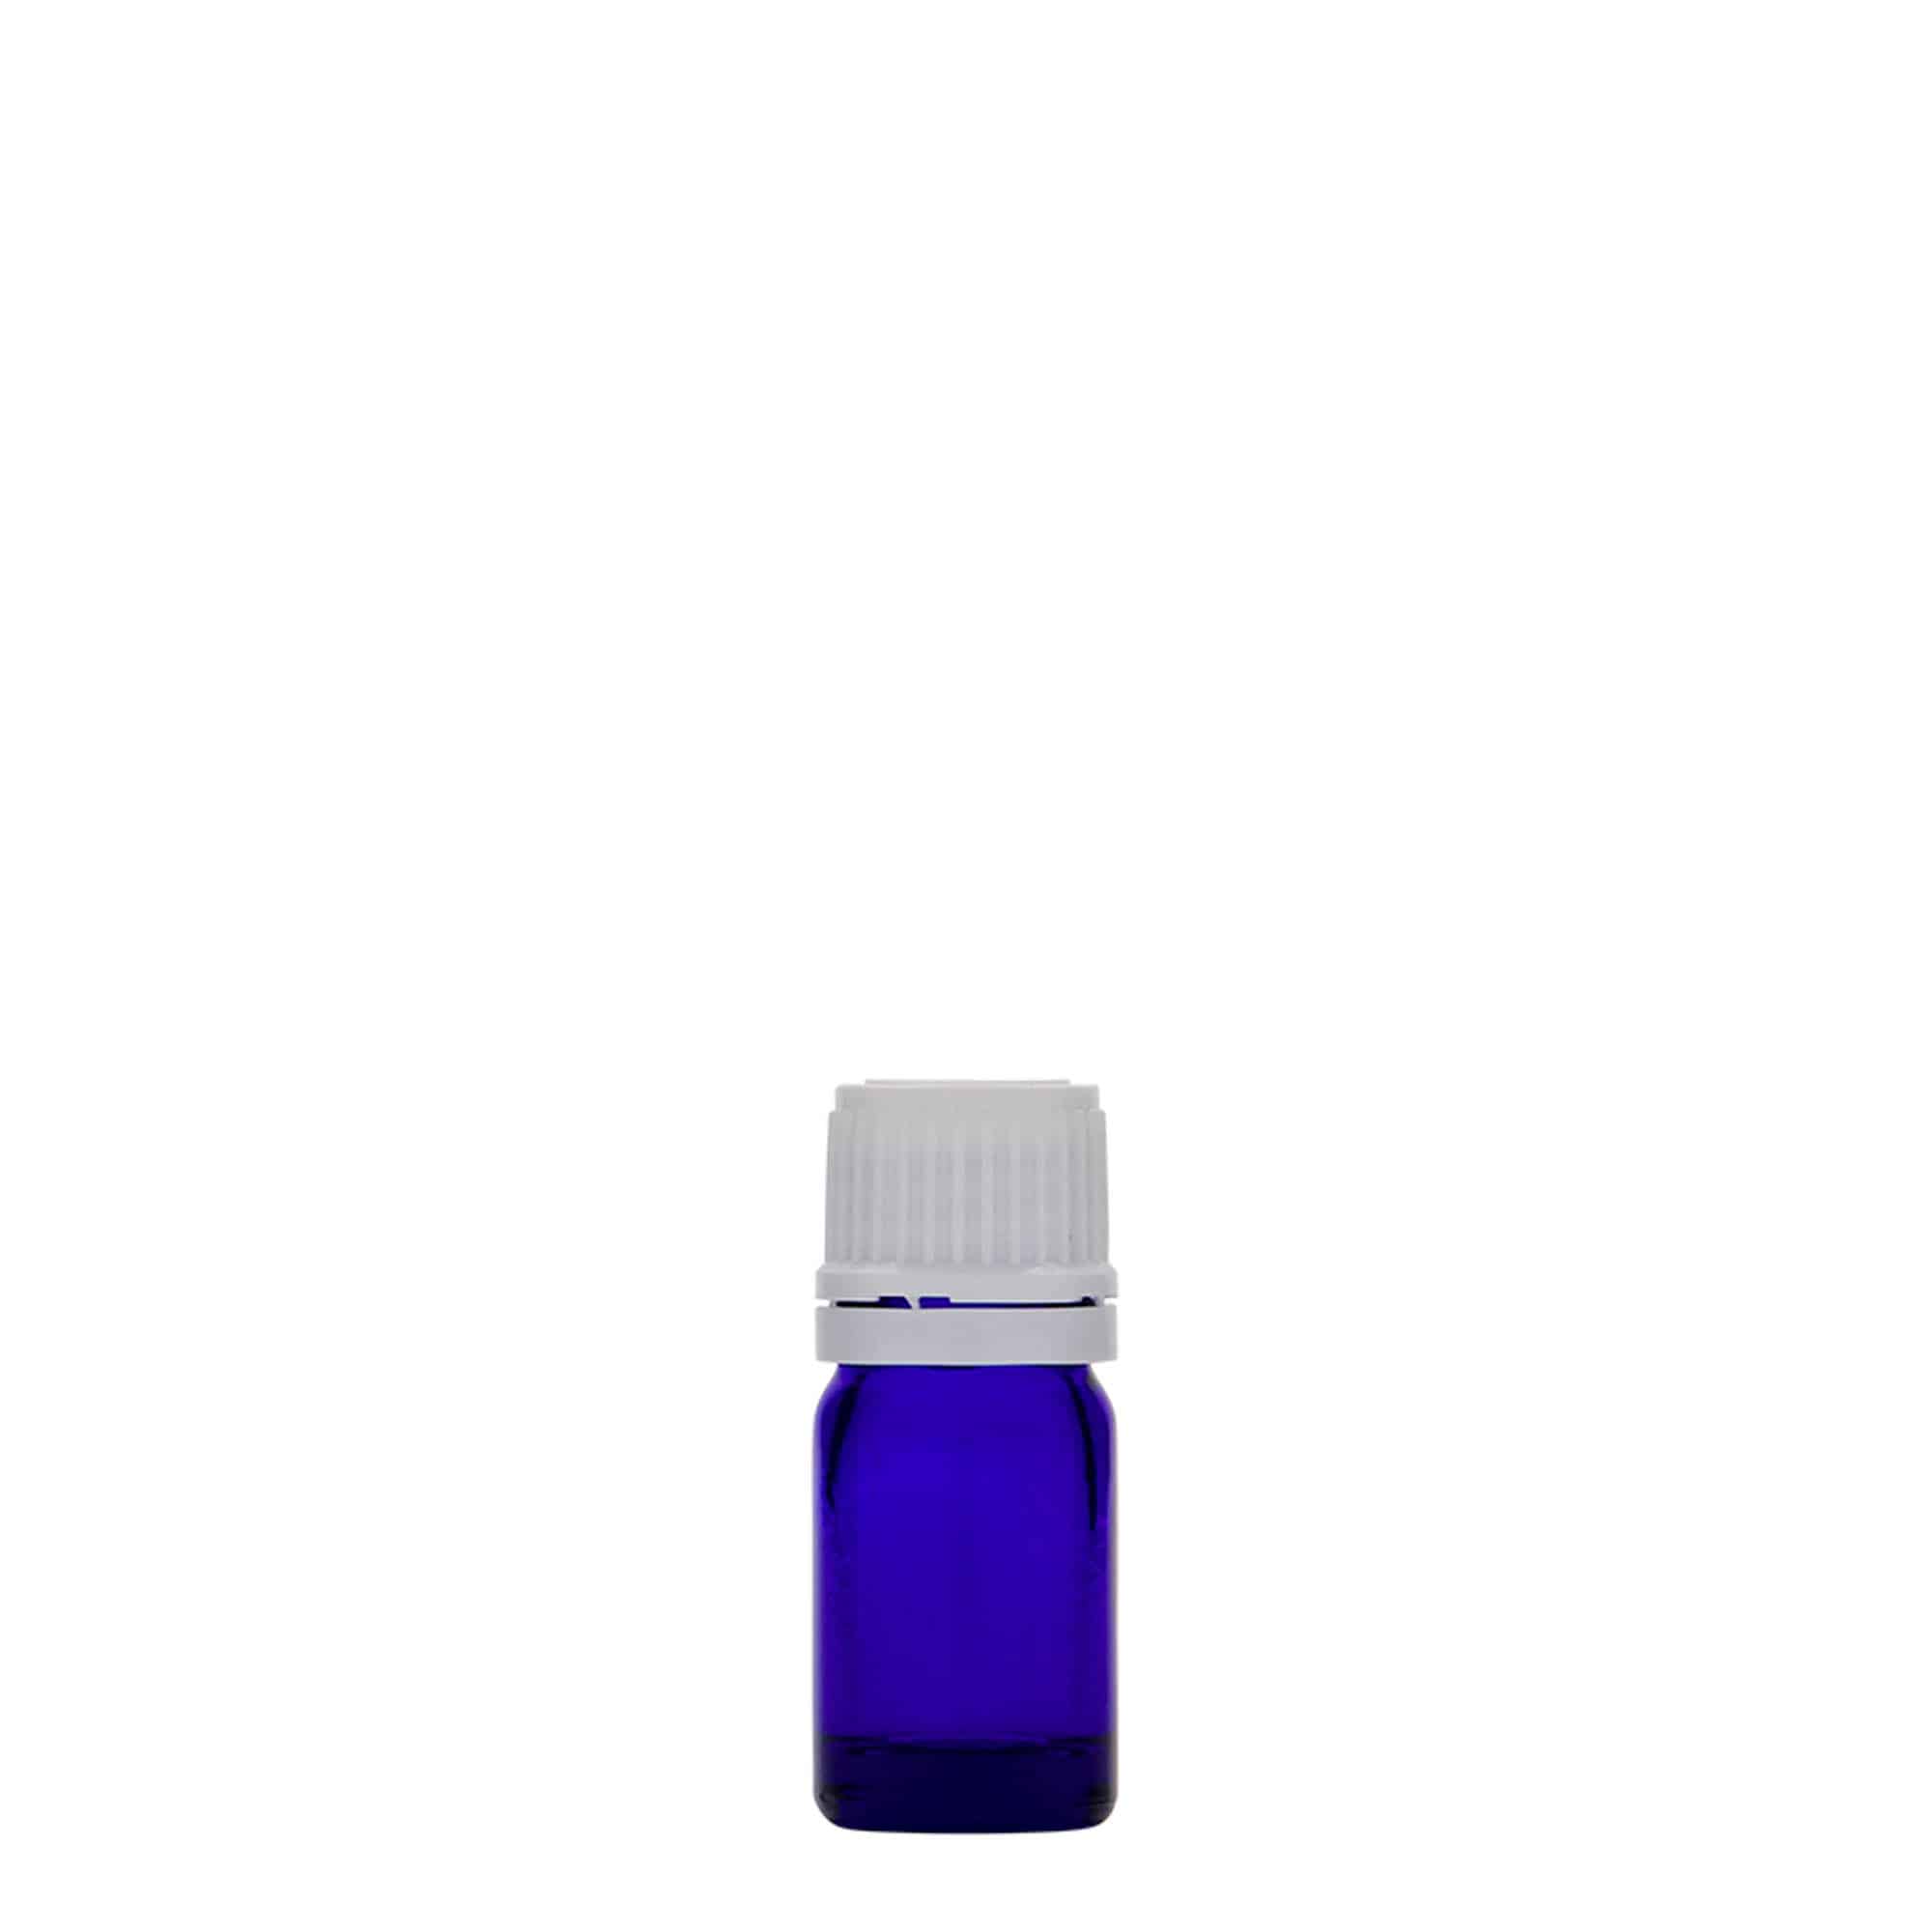 Lékovka 5 ml, sklo, královská modř, ústí: DIN 18